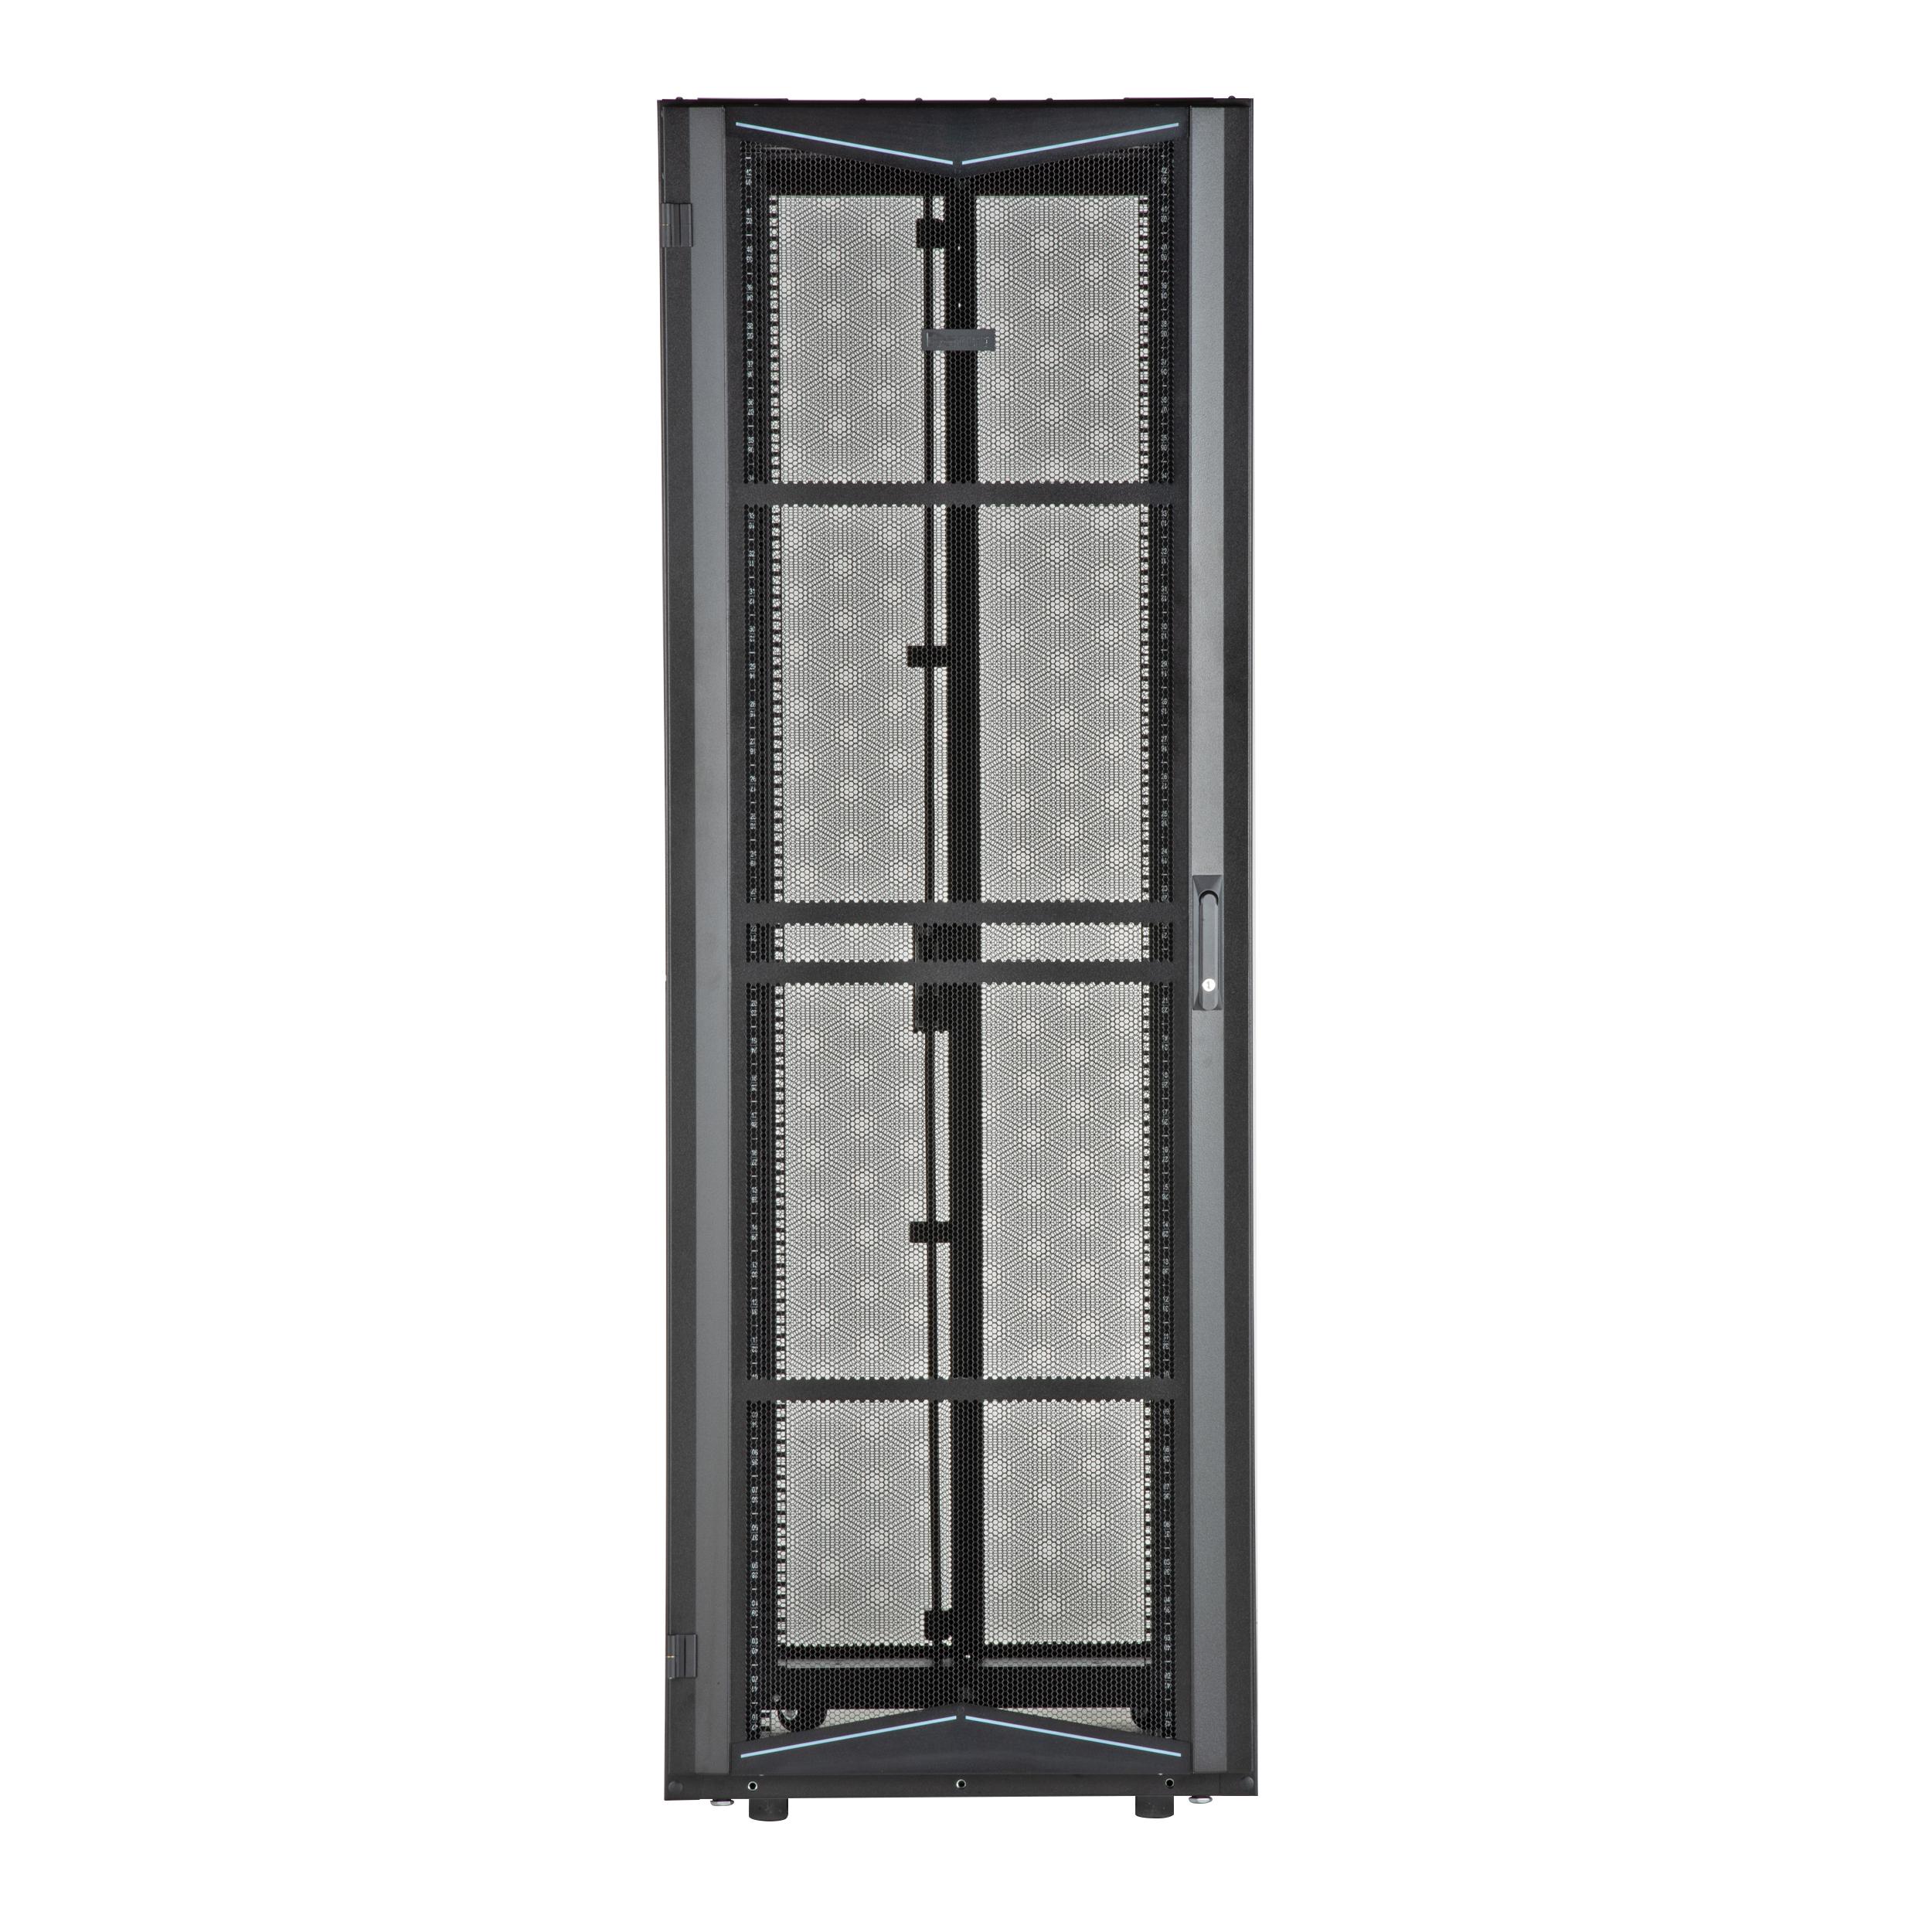 Panduit XG74212BS0001 FlexFusion Cabinet, 700mm x 42RU x 1070mm, Black